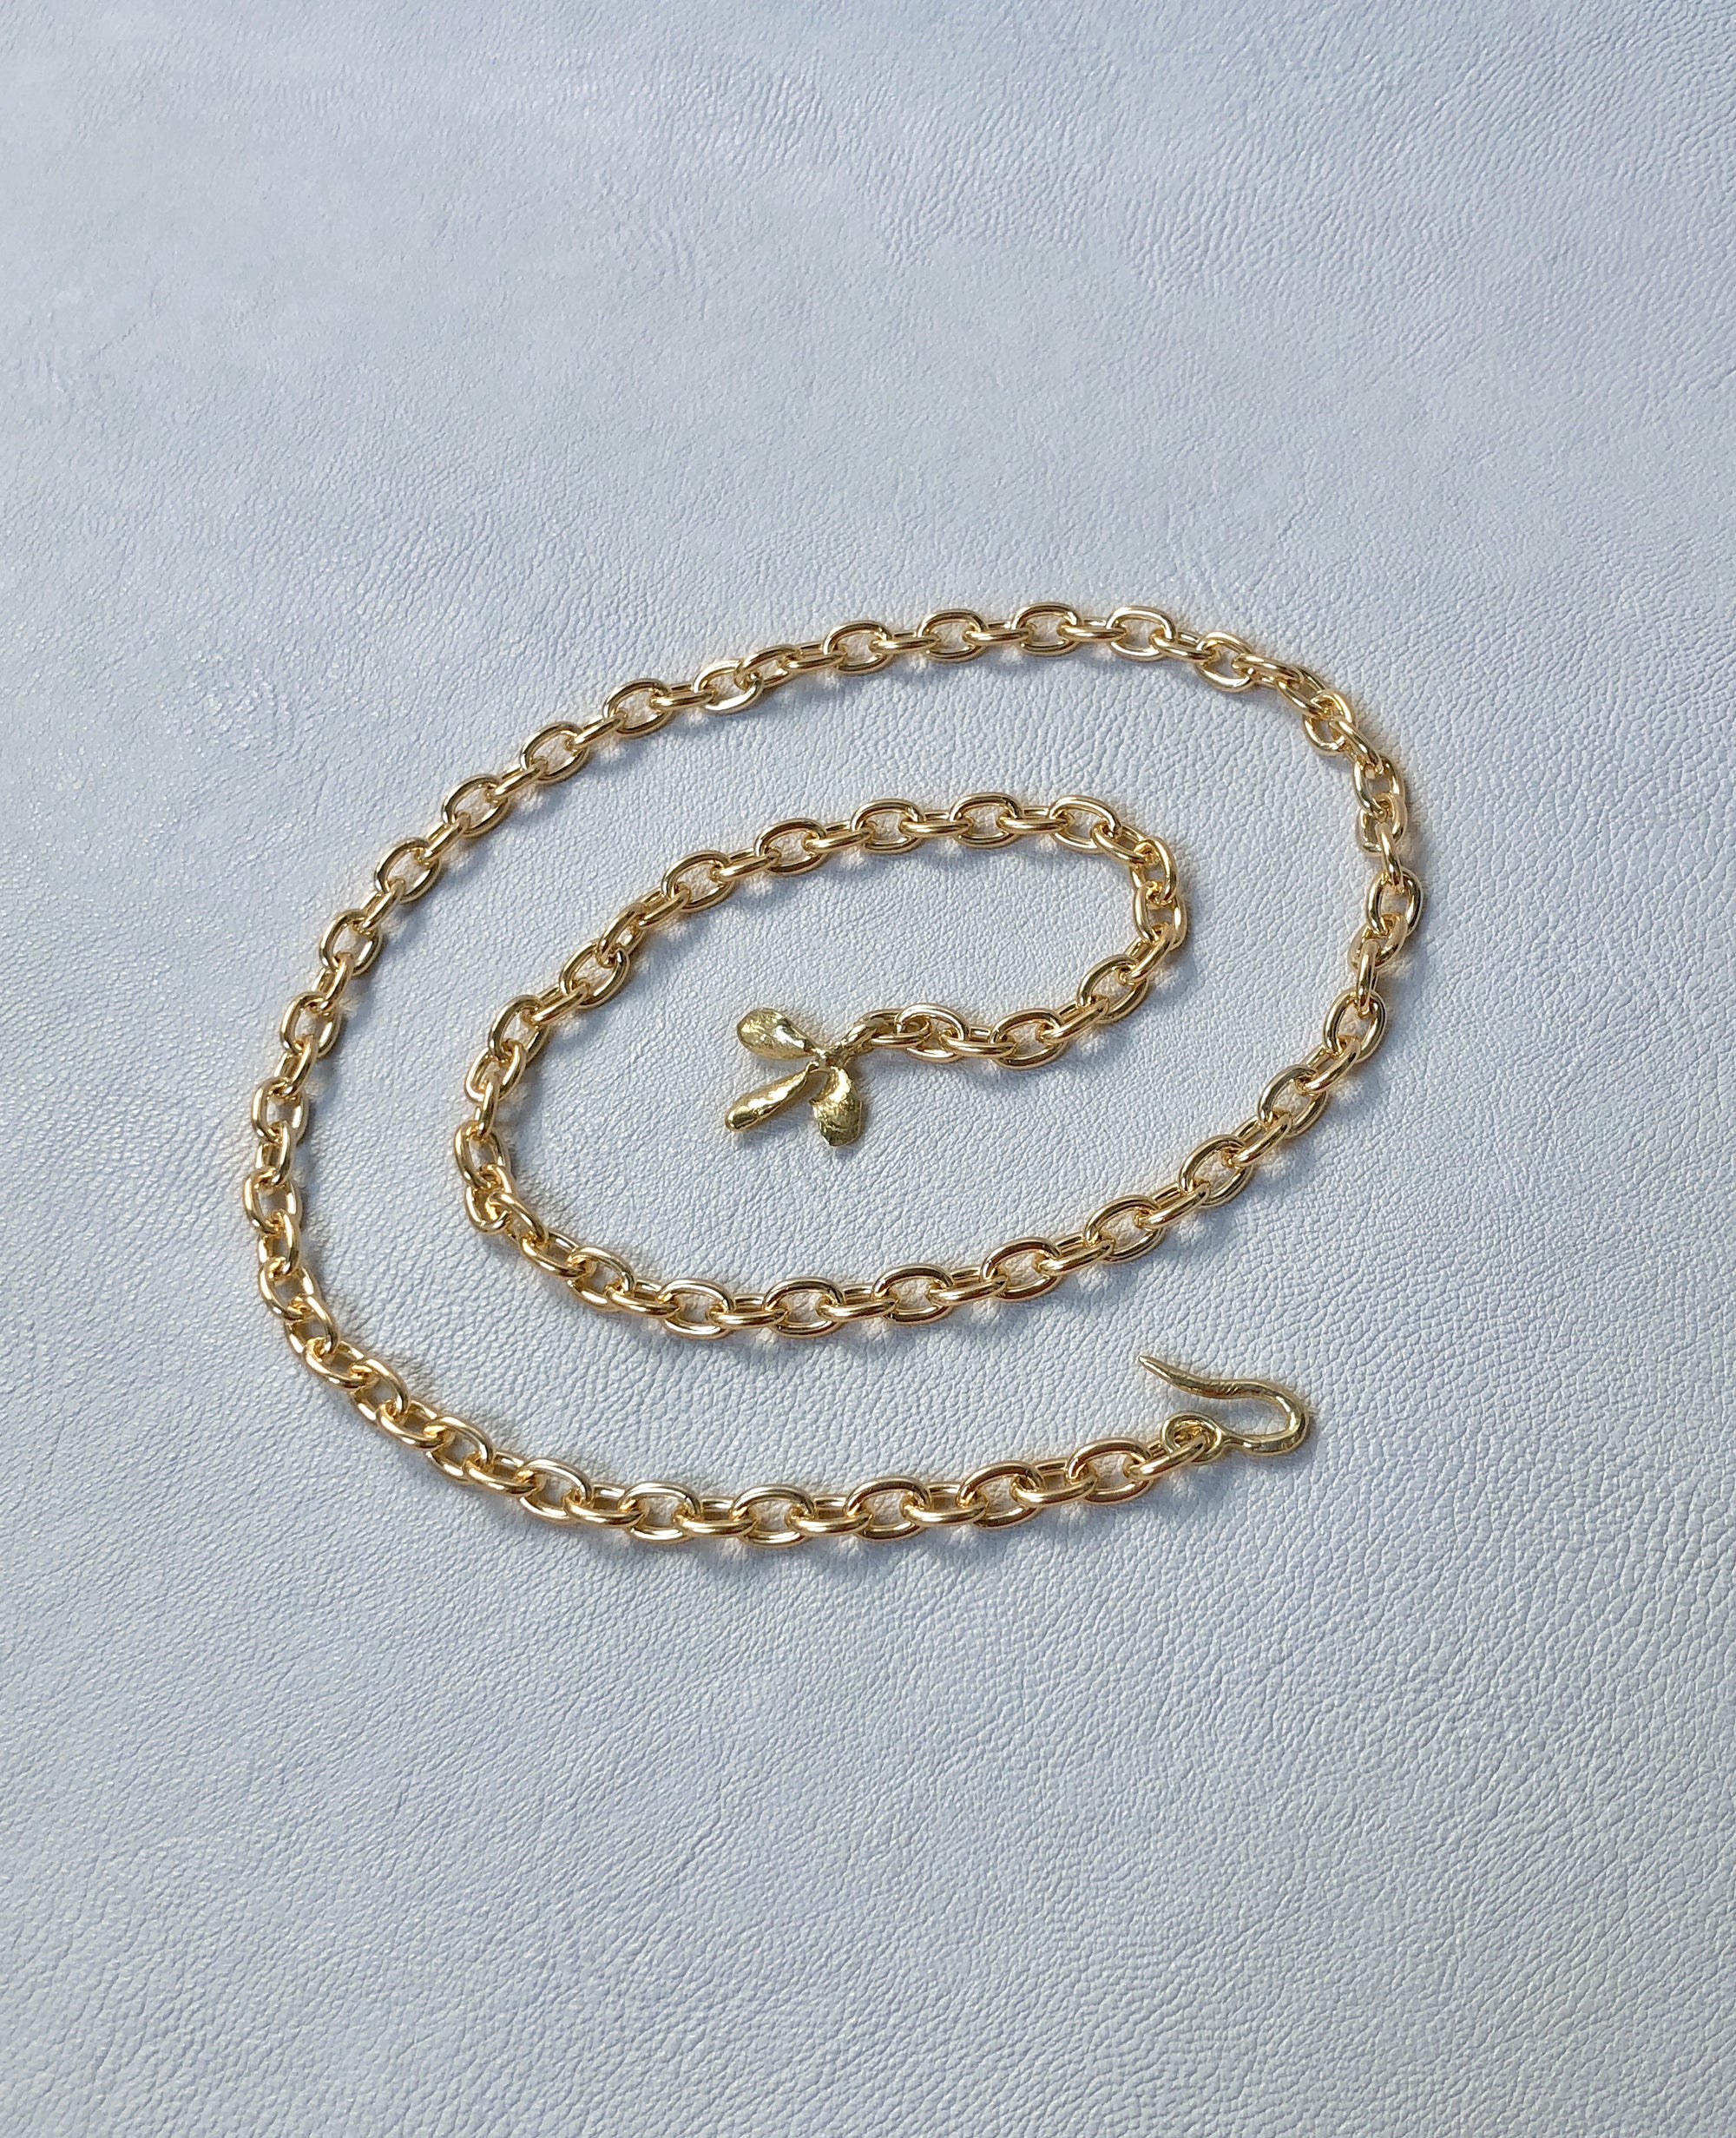 TRIFOLI // chaîne en laiton - bijoux ORA-C - bijoux faits à la main par Caroline Pham, designer indépendante basée à Montréal